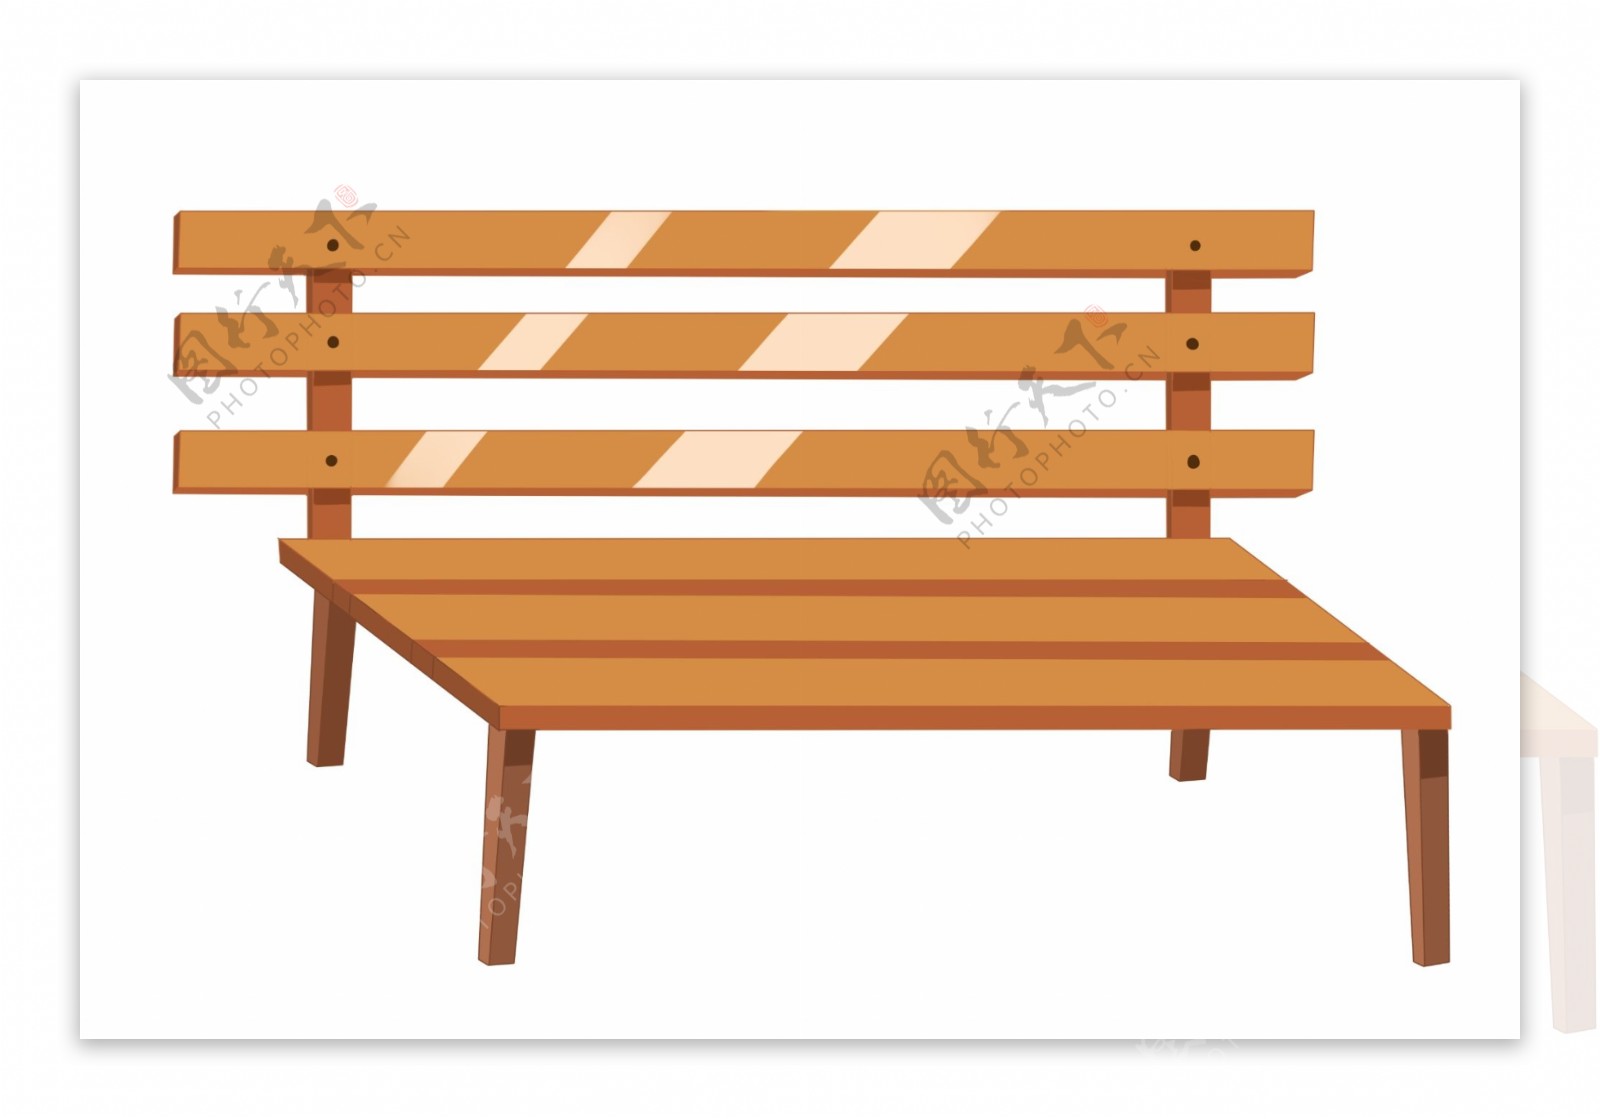 公园的木质椅子插画